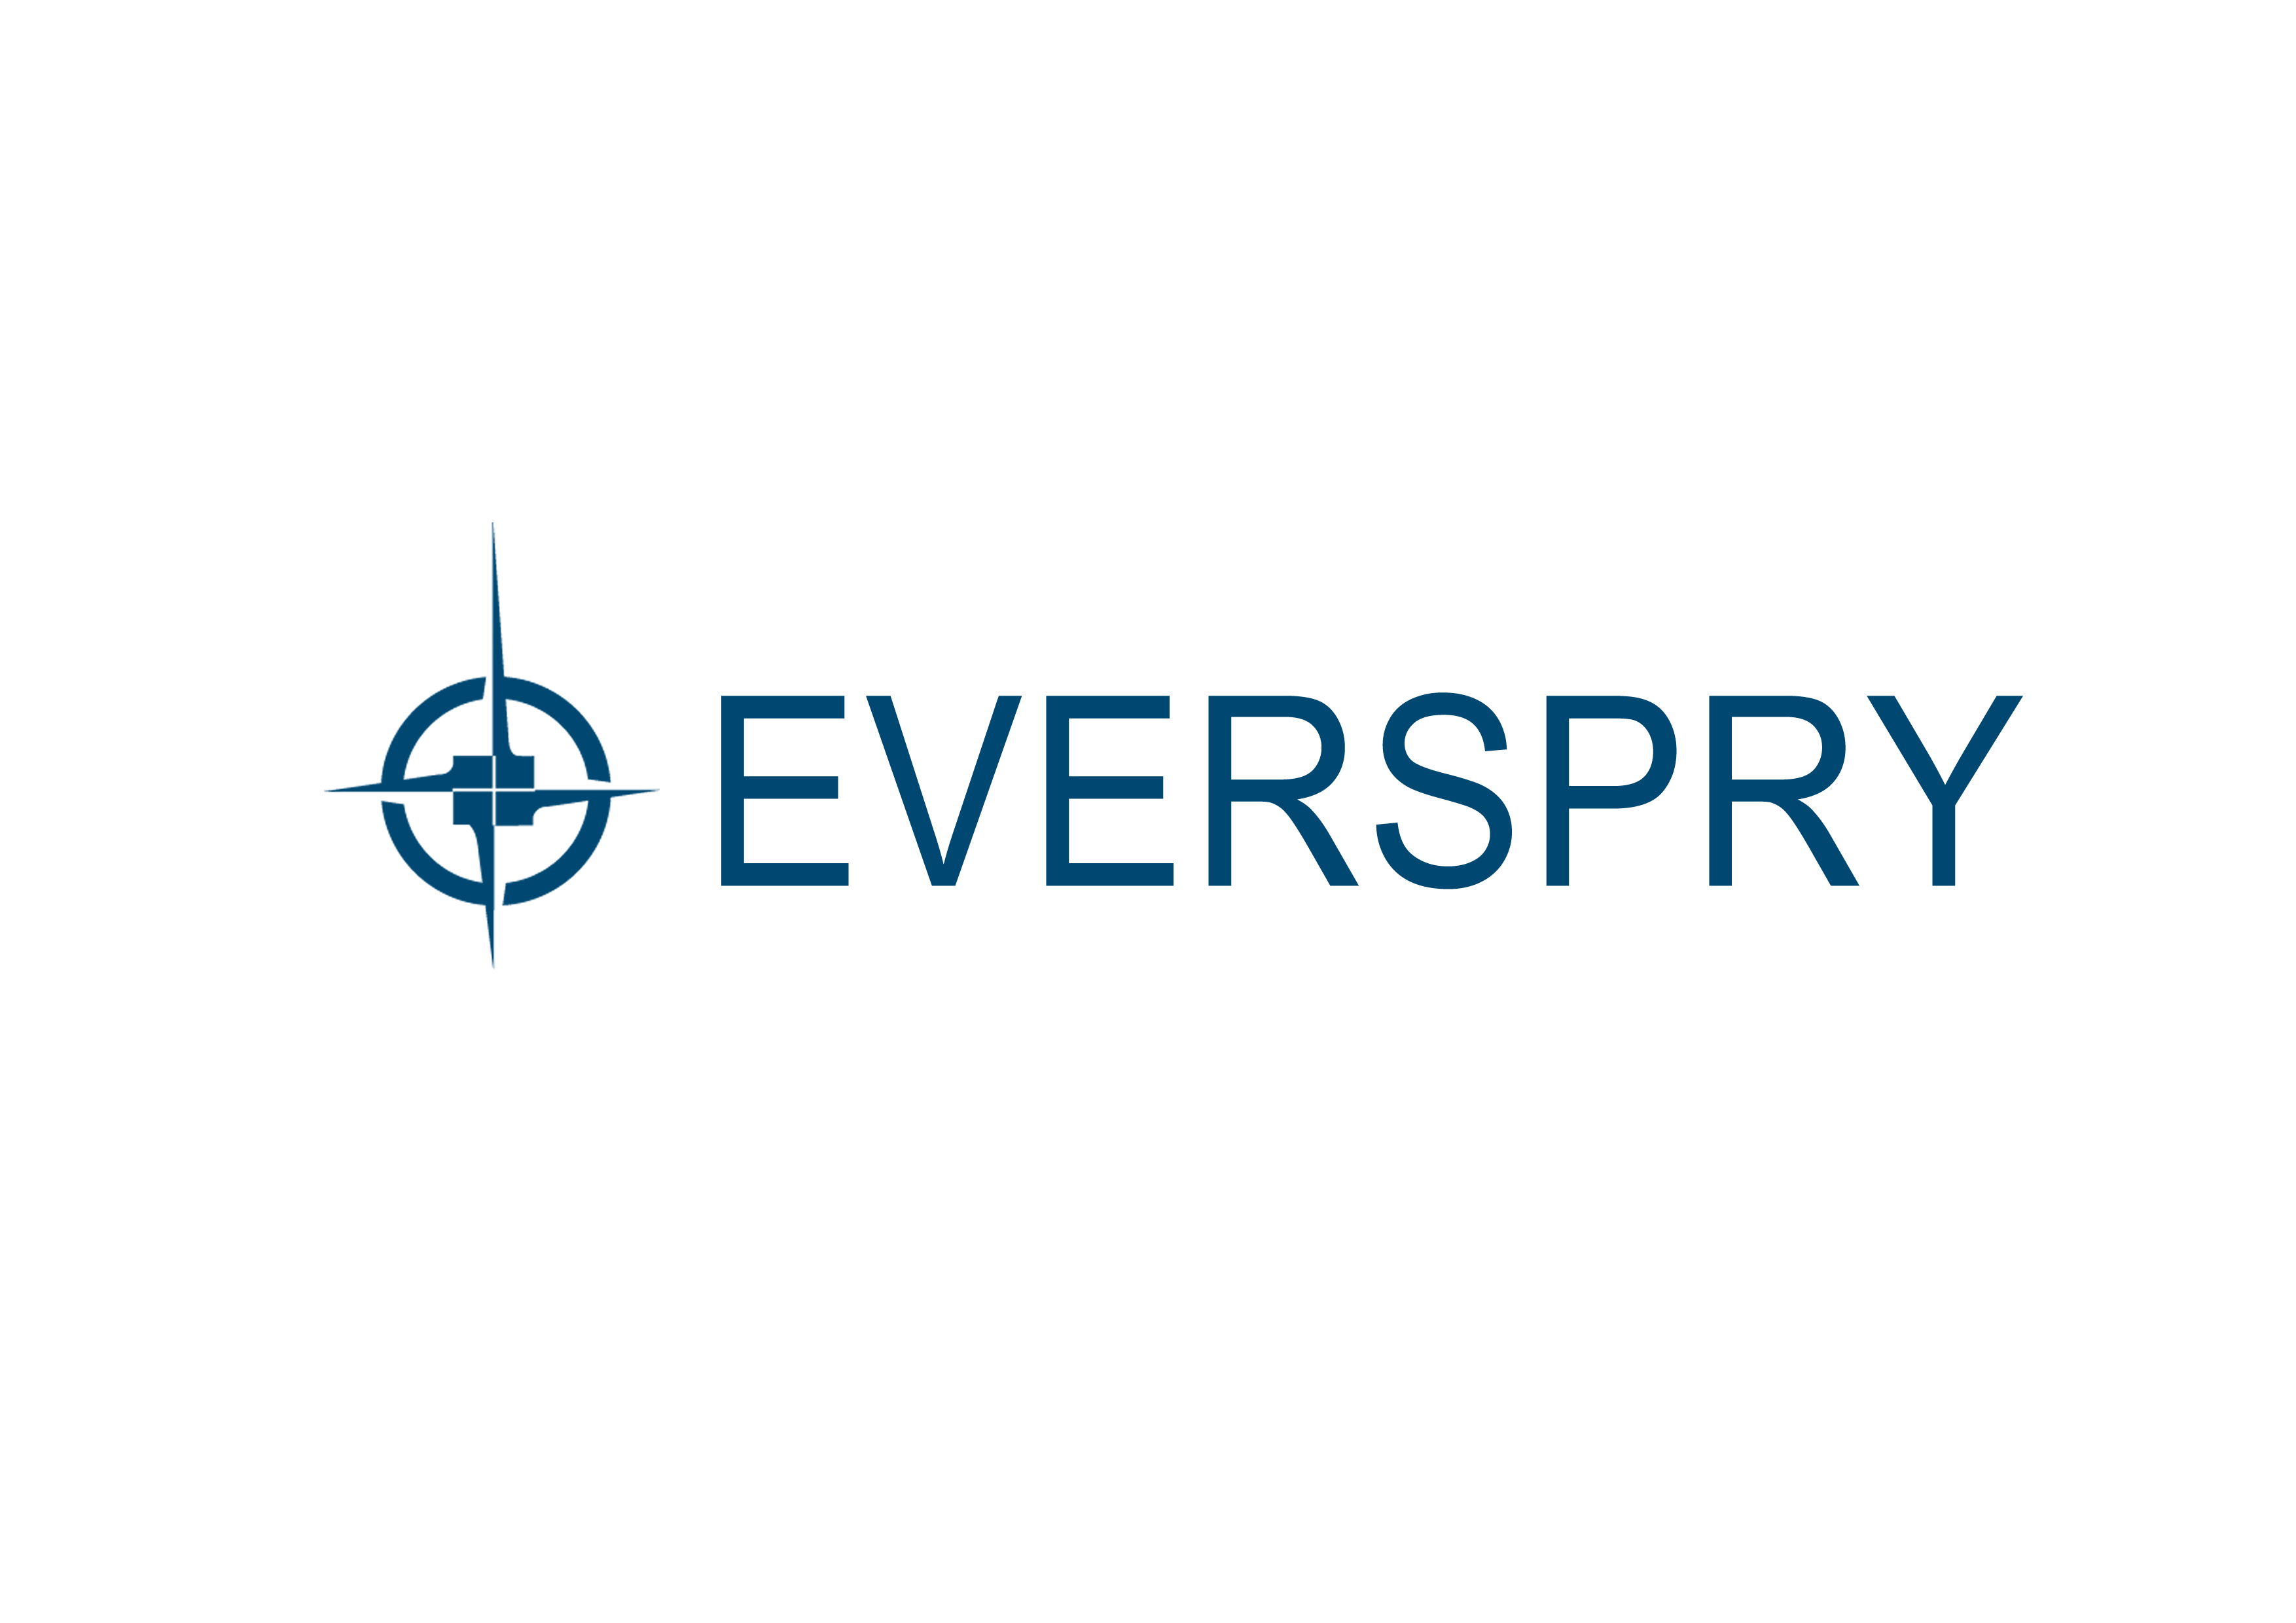 Everspry